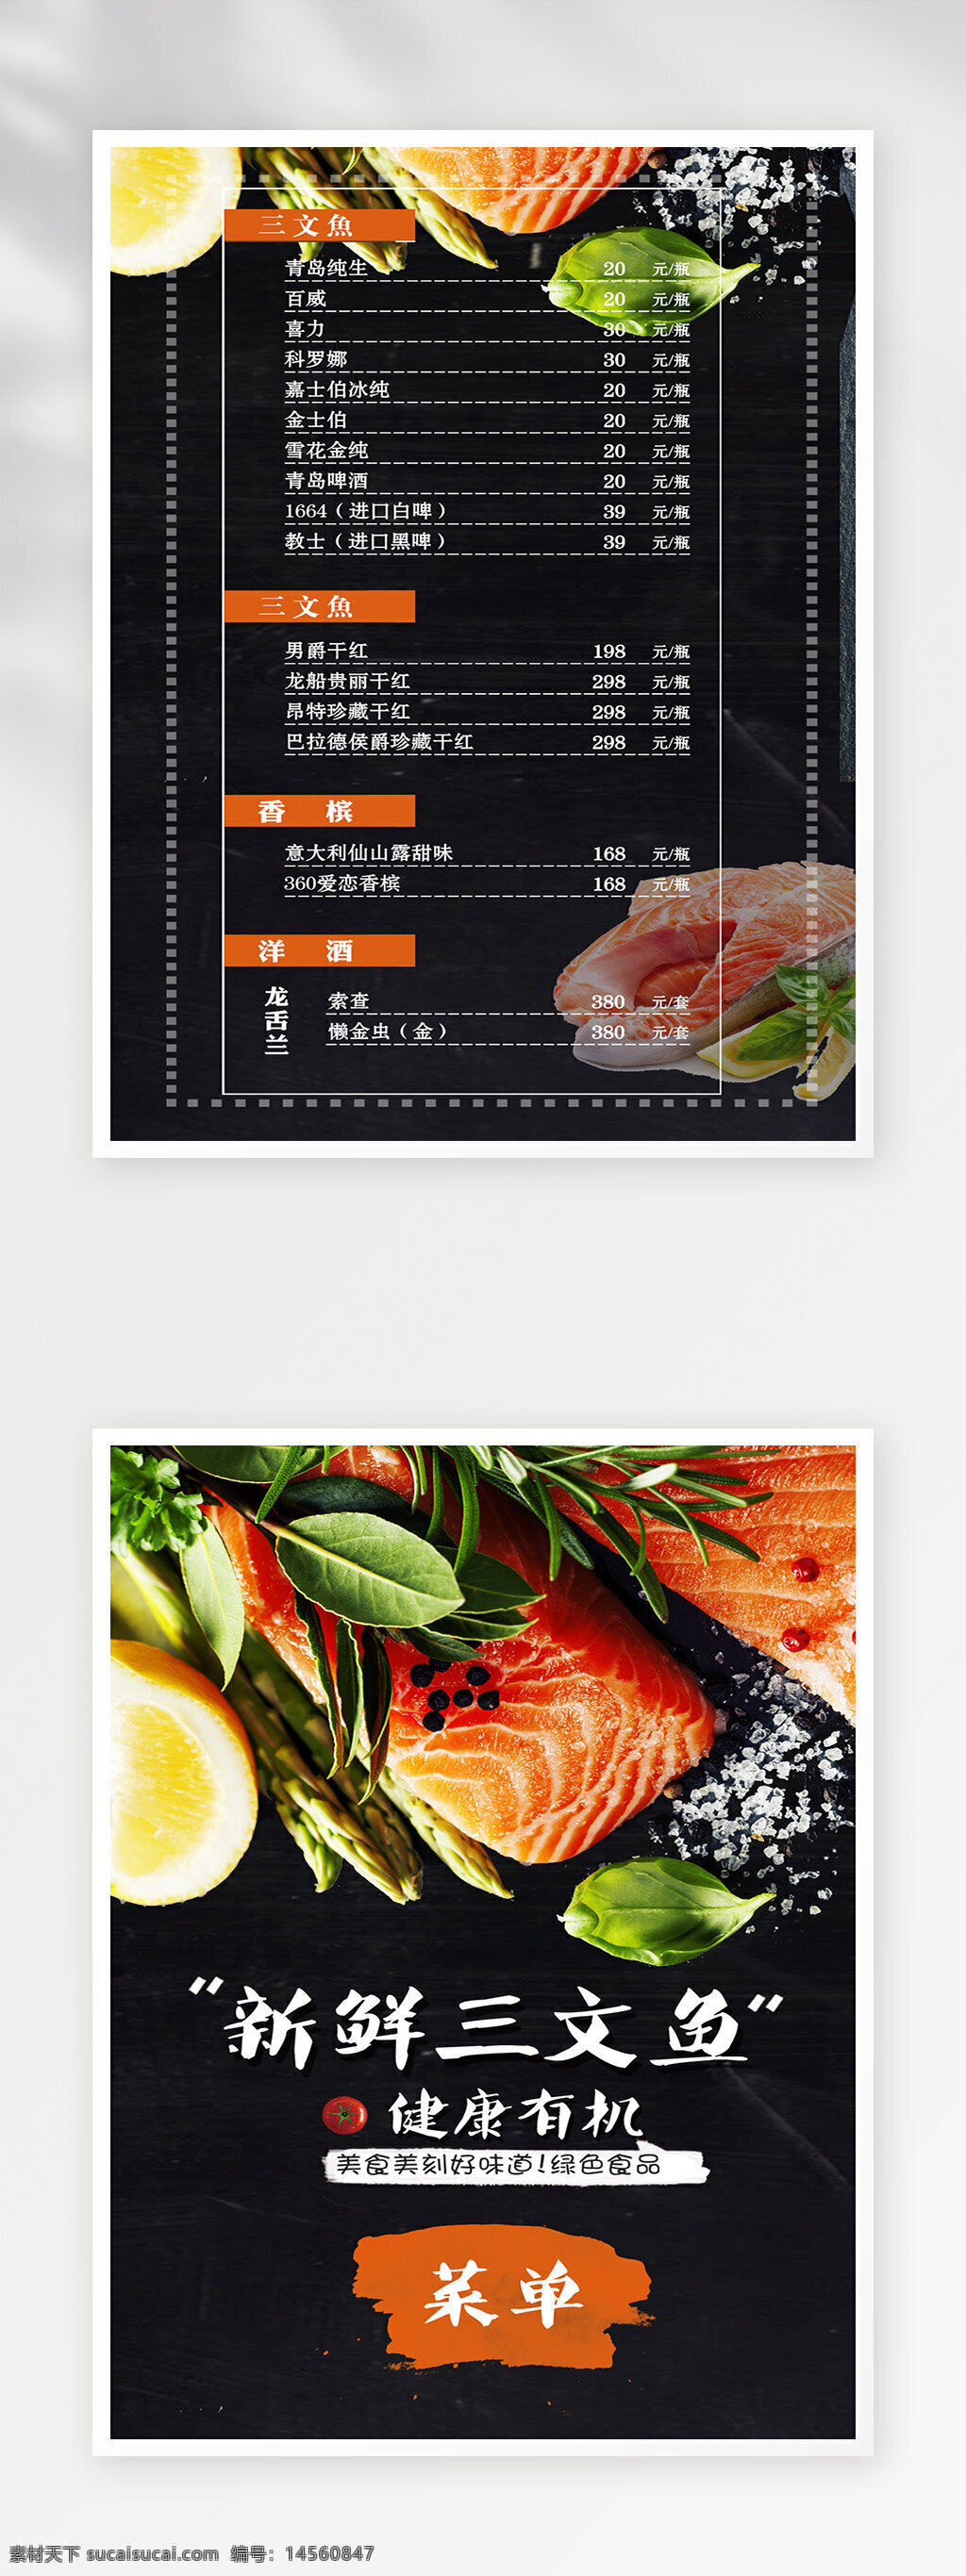 菜单设计 菜单 点餐单 菜谱 菜单菜谱 菜谱设计 菜单模板 菜单广告 价目表